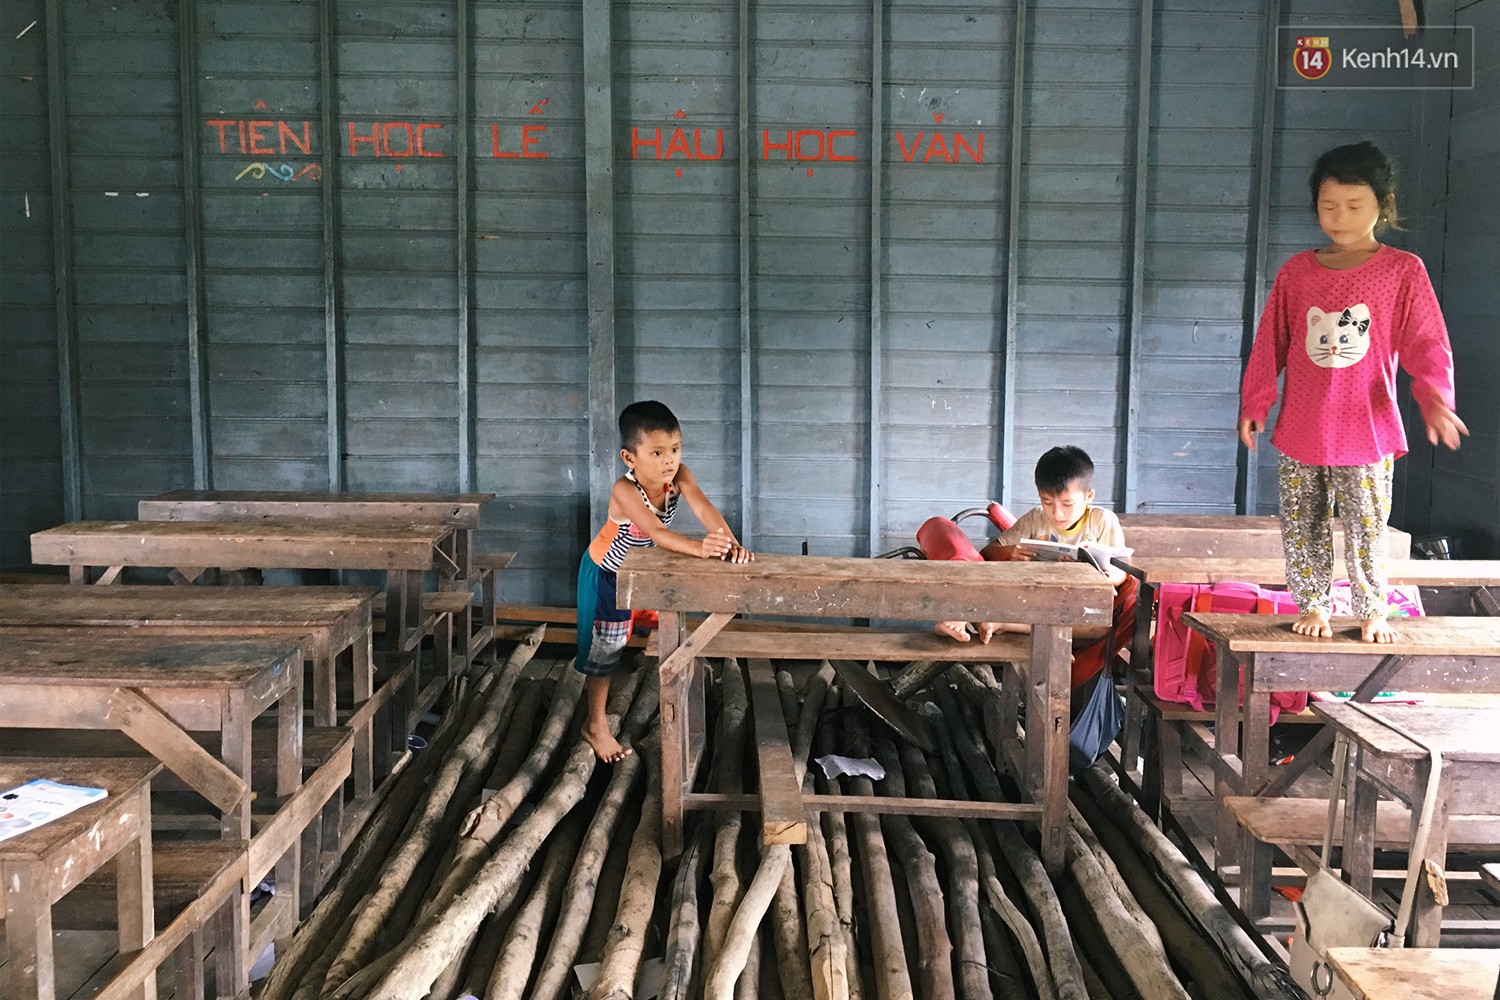 Chùm ảnh: Lớp học của những đứa trẻ Việt kiều không quốc tịch ở Biển Hồ Campuchia - Ảnh 6.